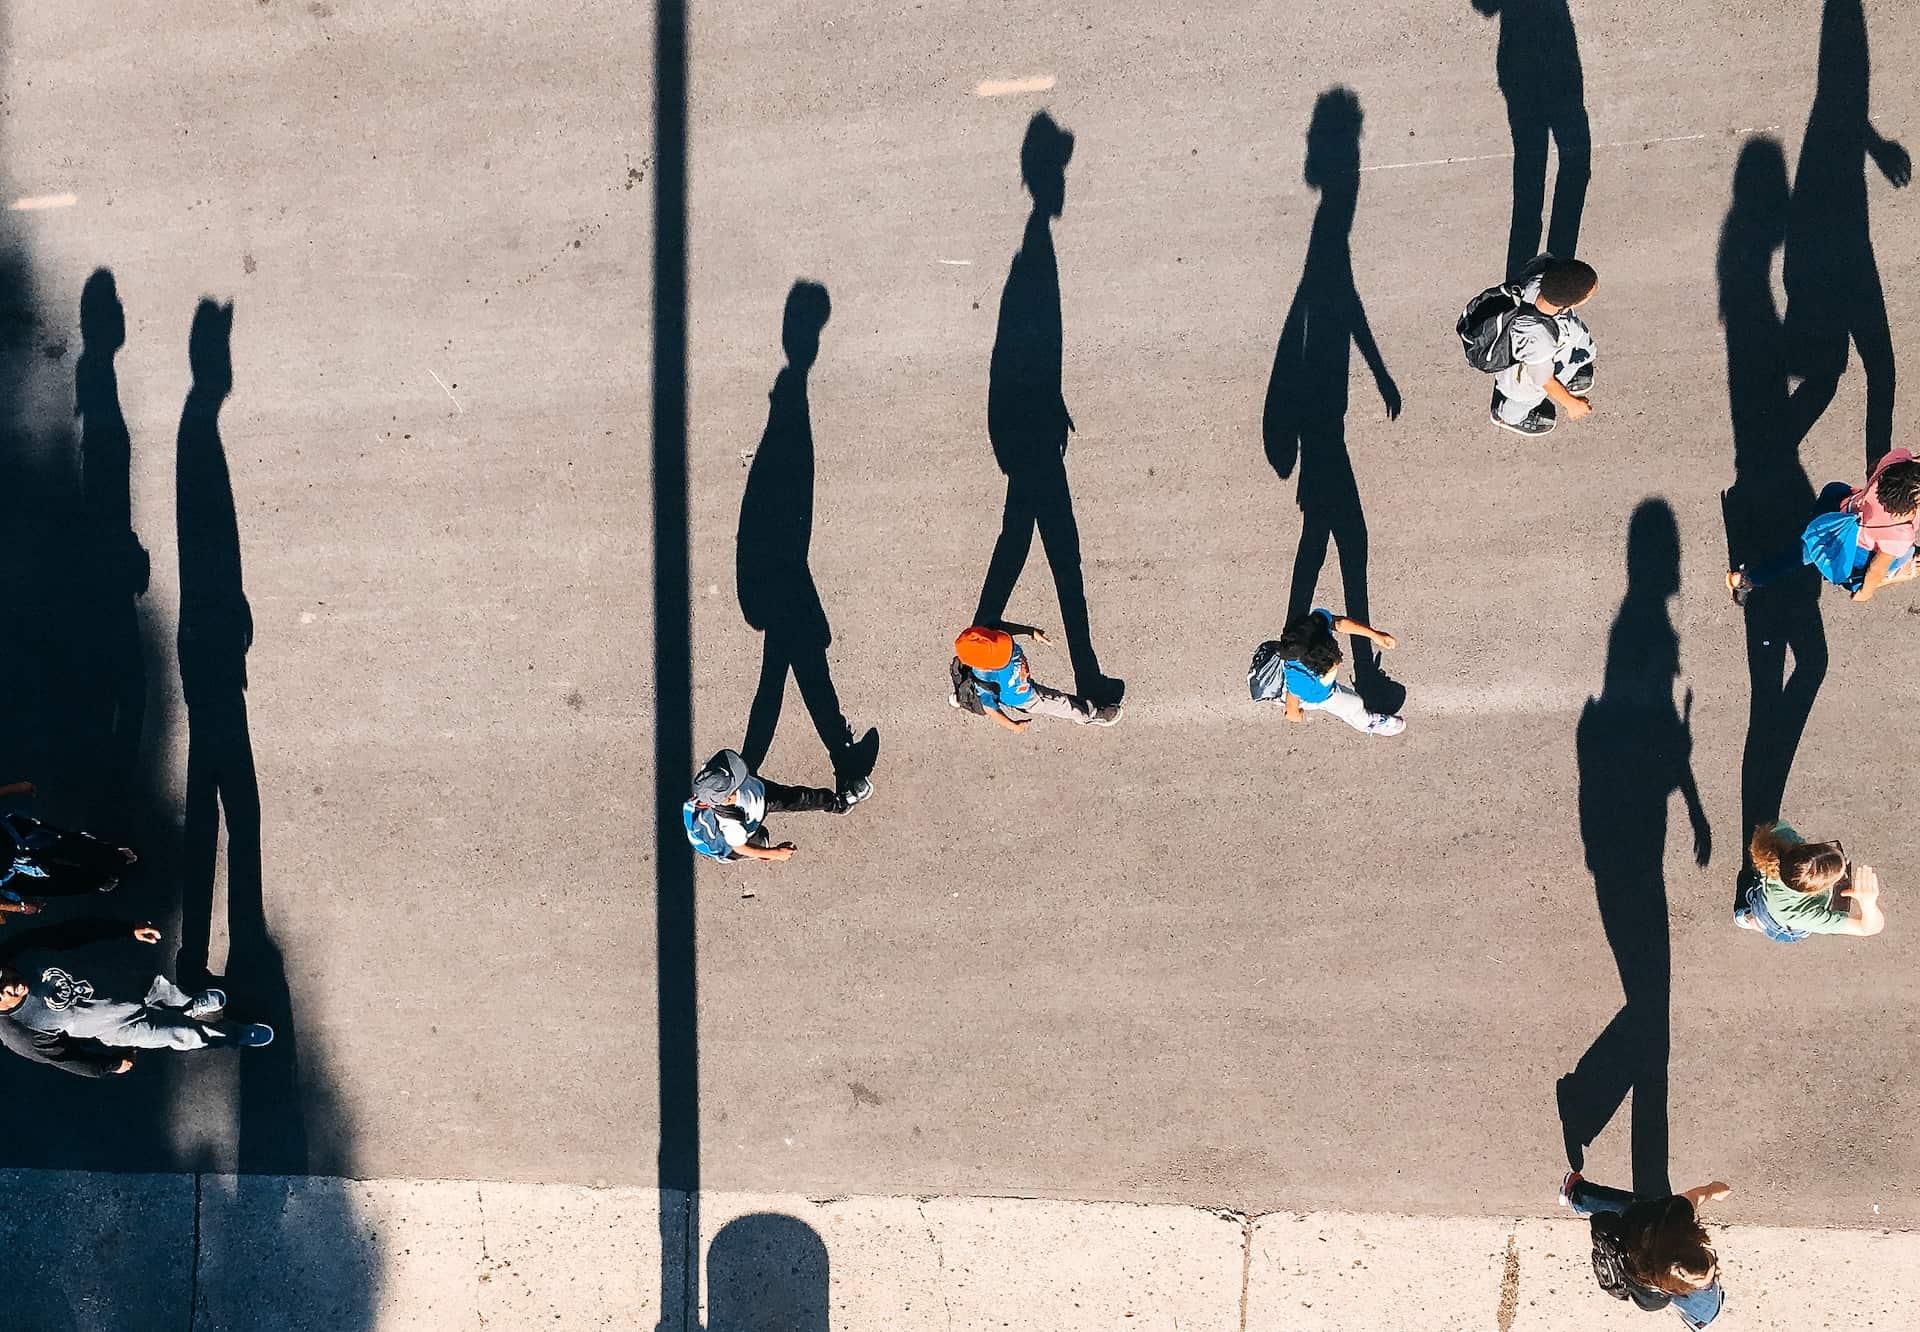 shadows of people walking